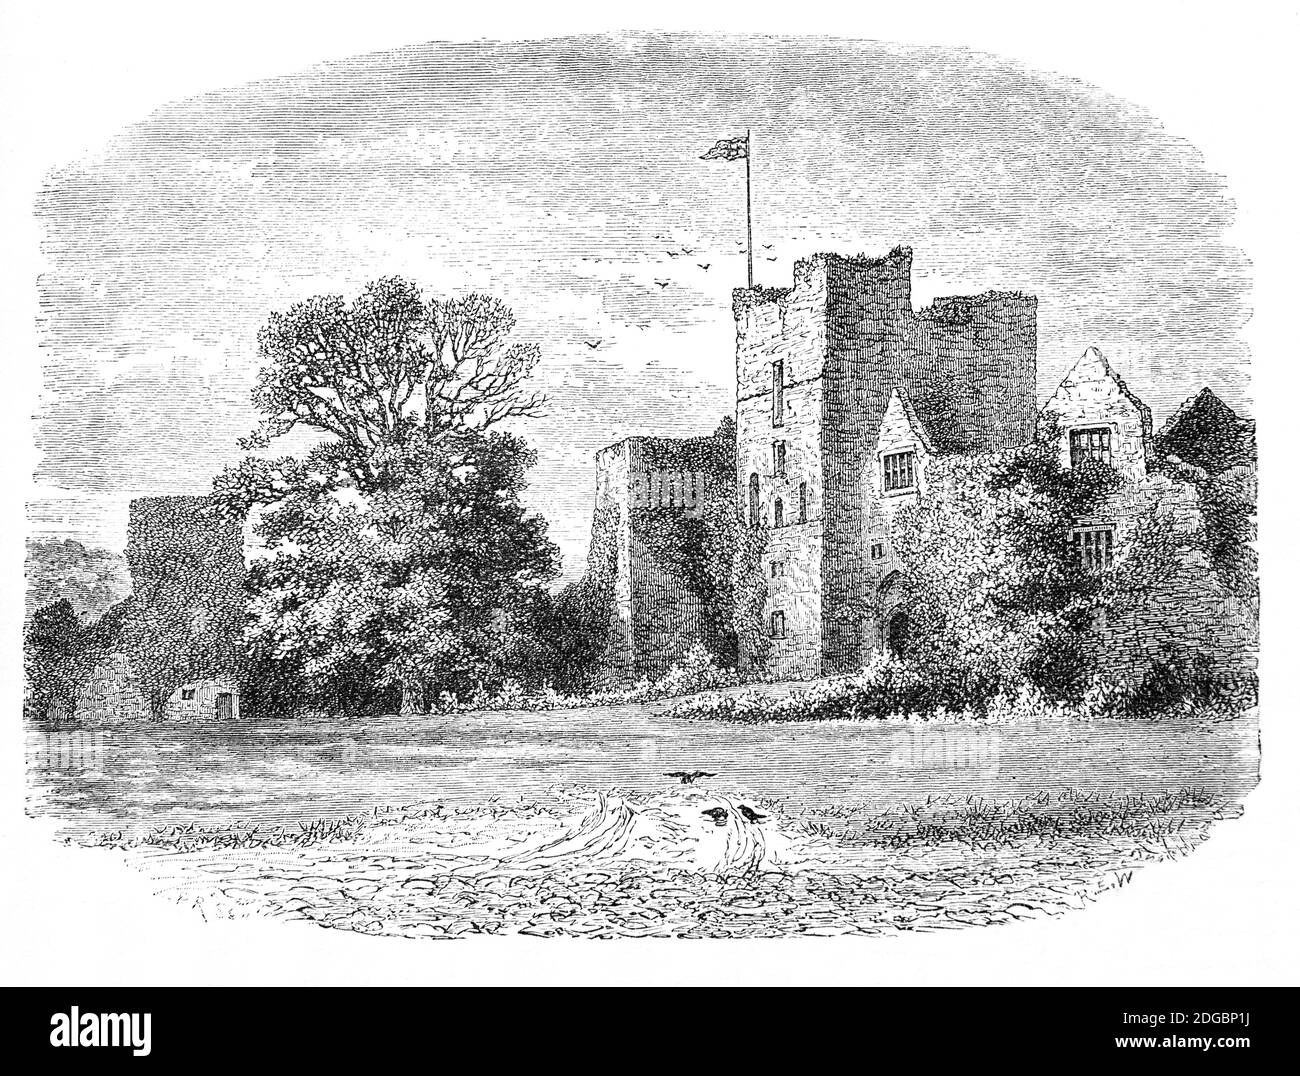 Una vista del tardo 19 ° secolo del castello di Ludlow, un castello medievale in rovina a Ludlow, Shropshire e uno dei primi castelli di pietra ad essere costruito in Inghilterra. Fu probabilmente fondata nel 11 ° secolo da Walter de Lacy dopo la conquista normanna. Durante la guerra civile inglese, fu assediata, presa da un esercito parlamentare nel 1646, dove fu trattenuta una guarnigione per gran parte dell'interregno. Dopo il restauro del 1660, cadde in disattenzione fino a quando un palazzo fu costruito nel bailey esterno. Oltre ad alcuni paesaggi, il resto del castello è stato lasciato in gran parte intatto. Foto Stock